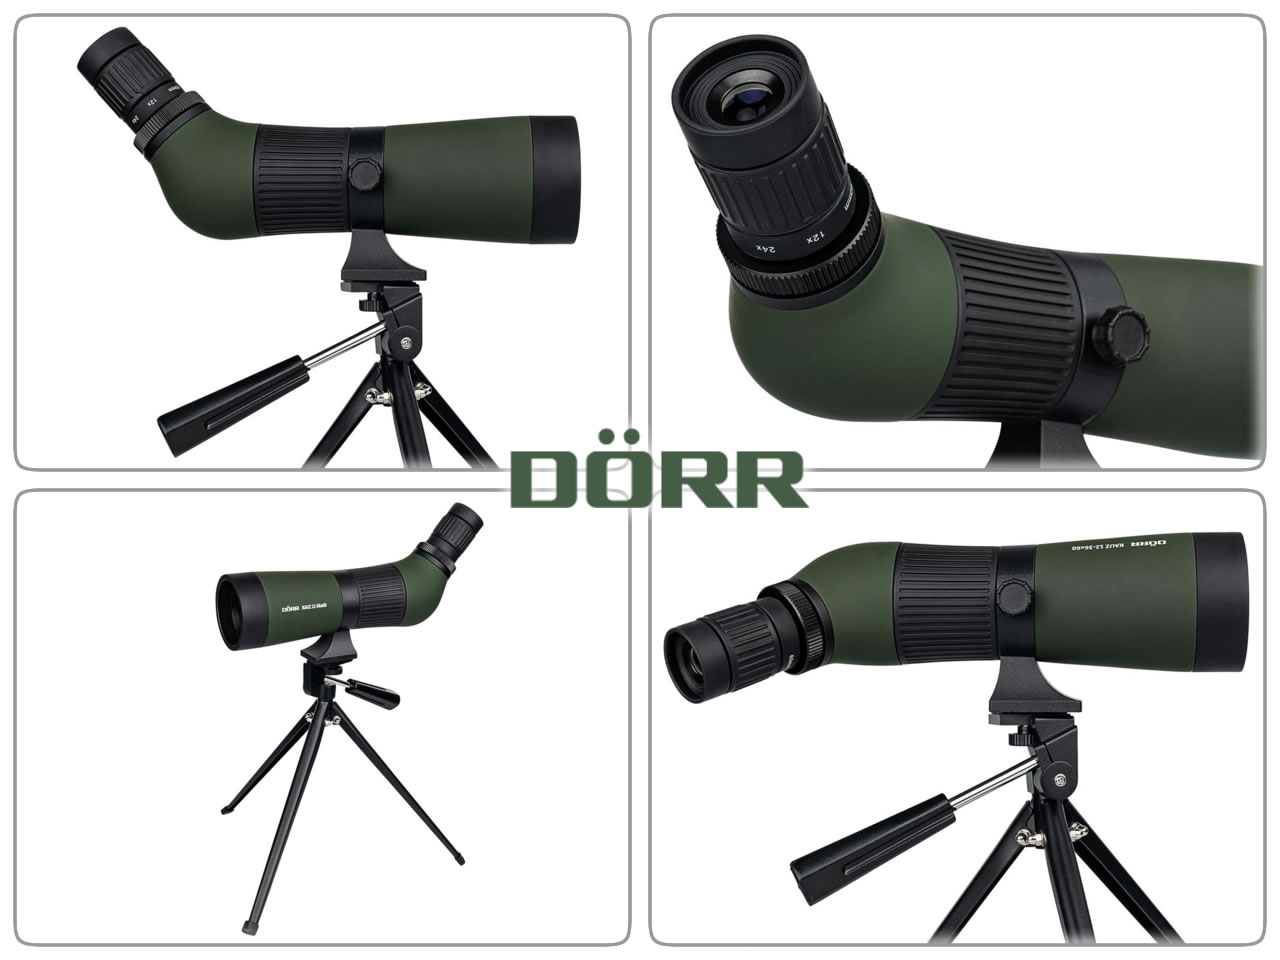 Spektiv Zoomspektiv Beobachtungsfernrohr Dörr Kauz 12-36x60 grün inklusive Tischstativ und Tasche